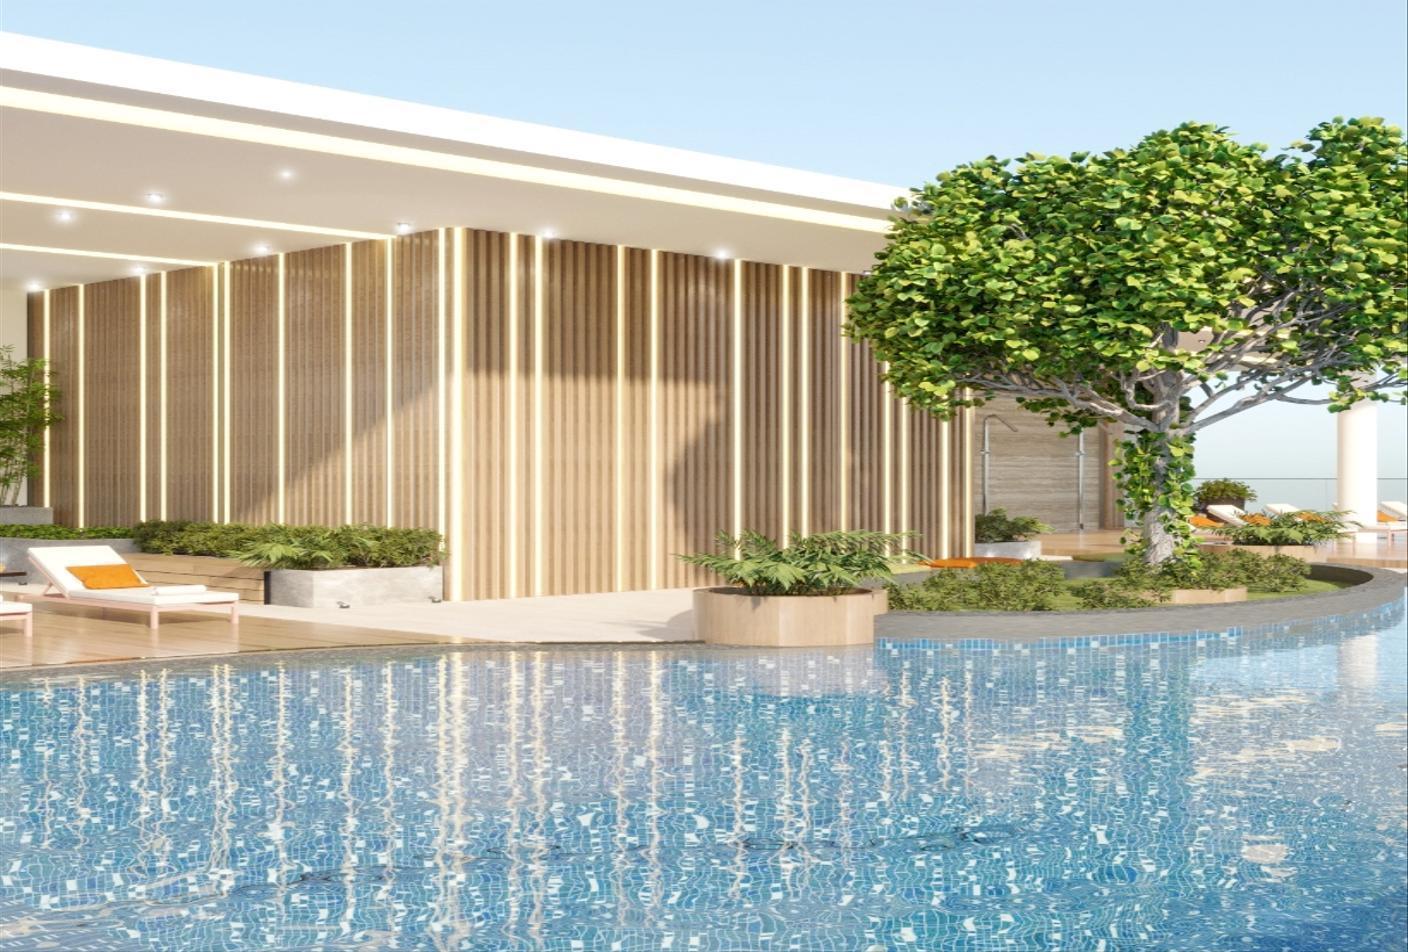 2 bed, 4 bath Hotel & Hotel Apartment for sale in One Reem Island, Shams Abu Dhabi, Al Reem Island, Abu Dhabi for price AED 2415000 